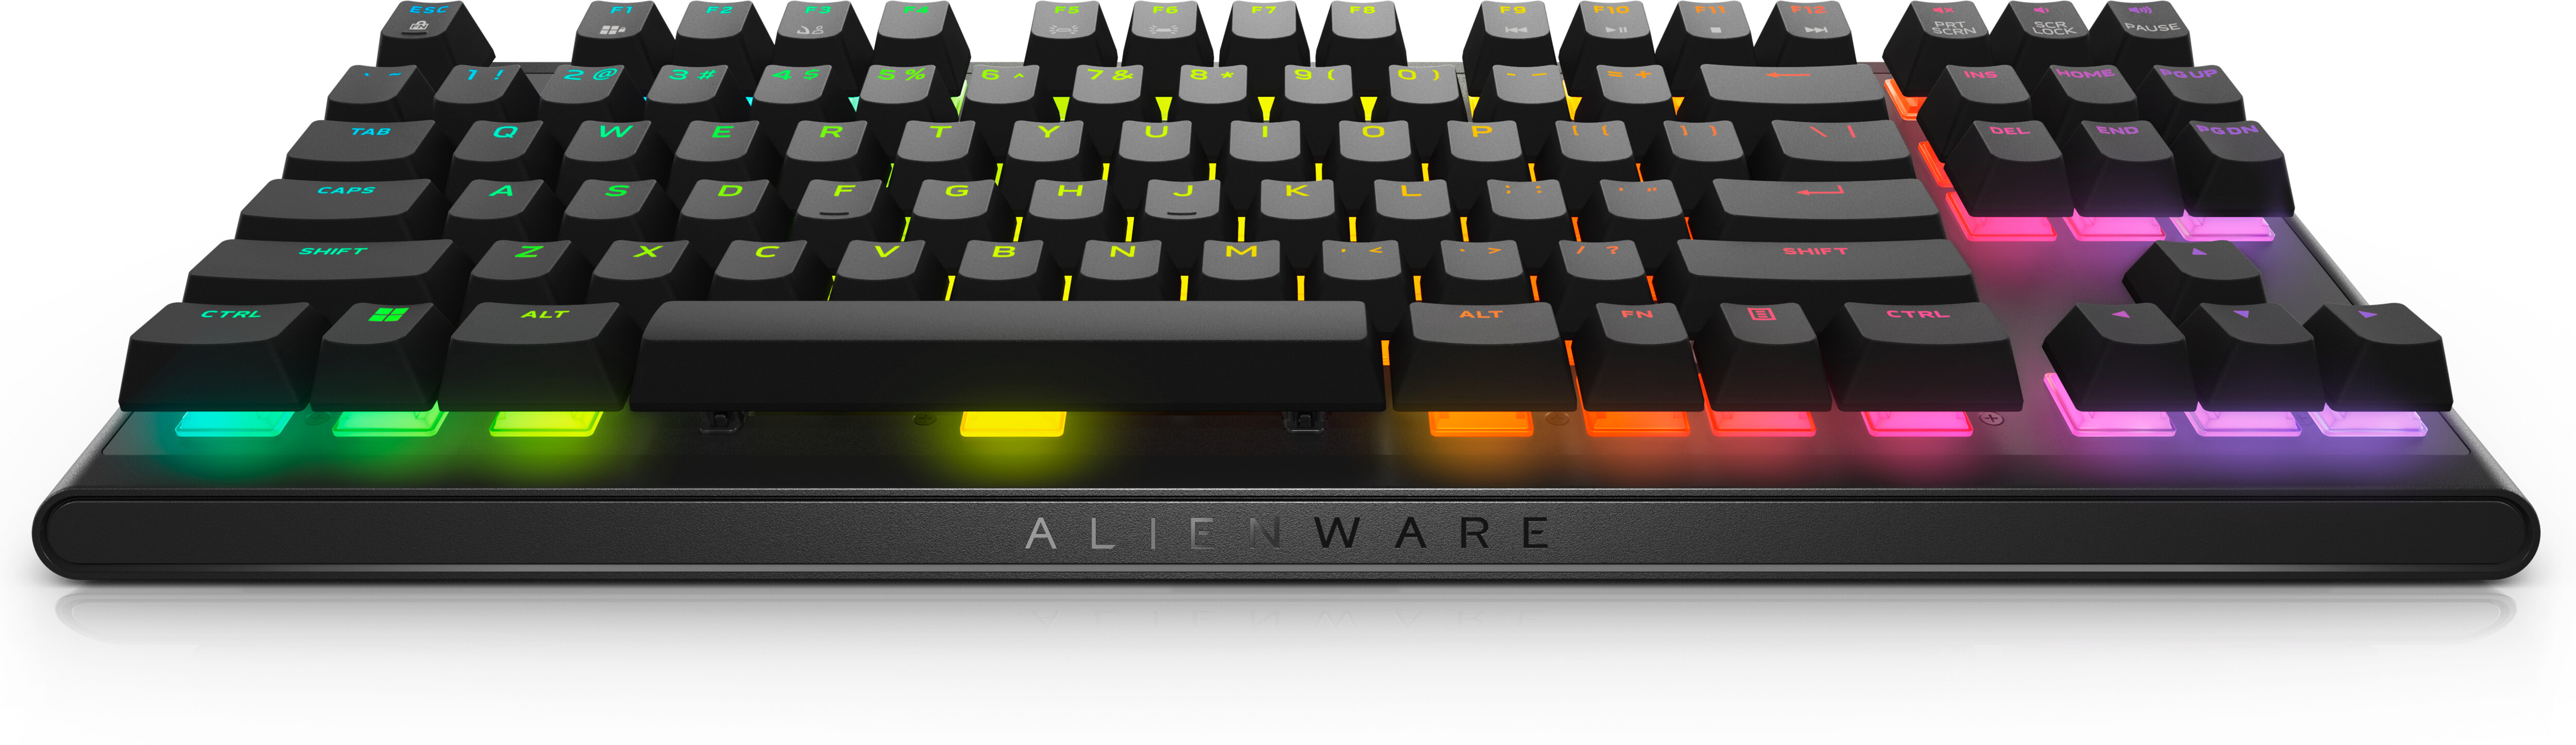 Alienware Gaming Keyboard & Mouse Bundle - AW420K & AW620M - DSOTM